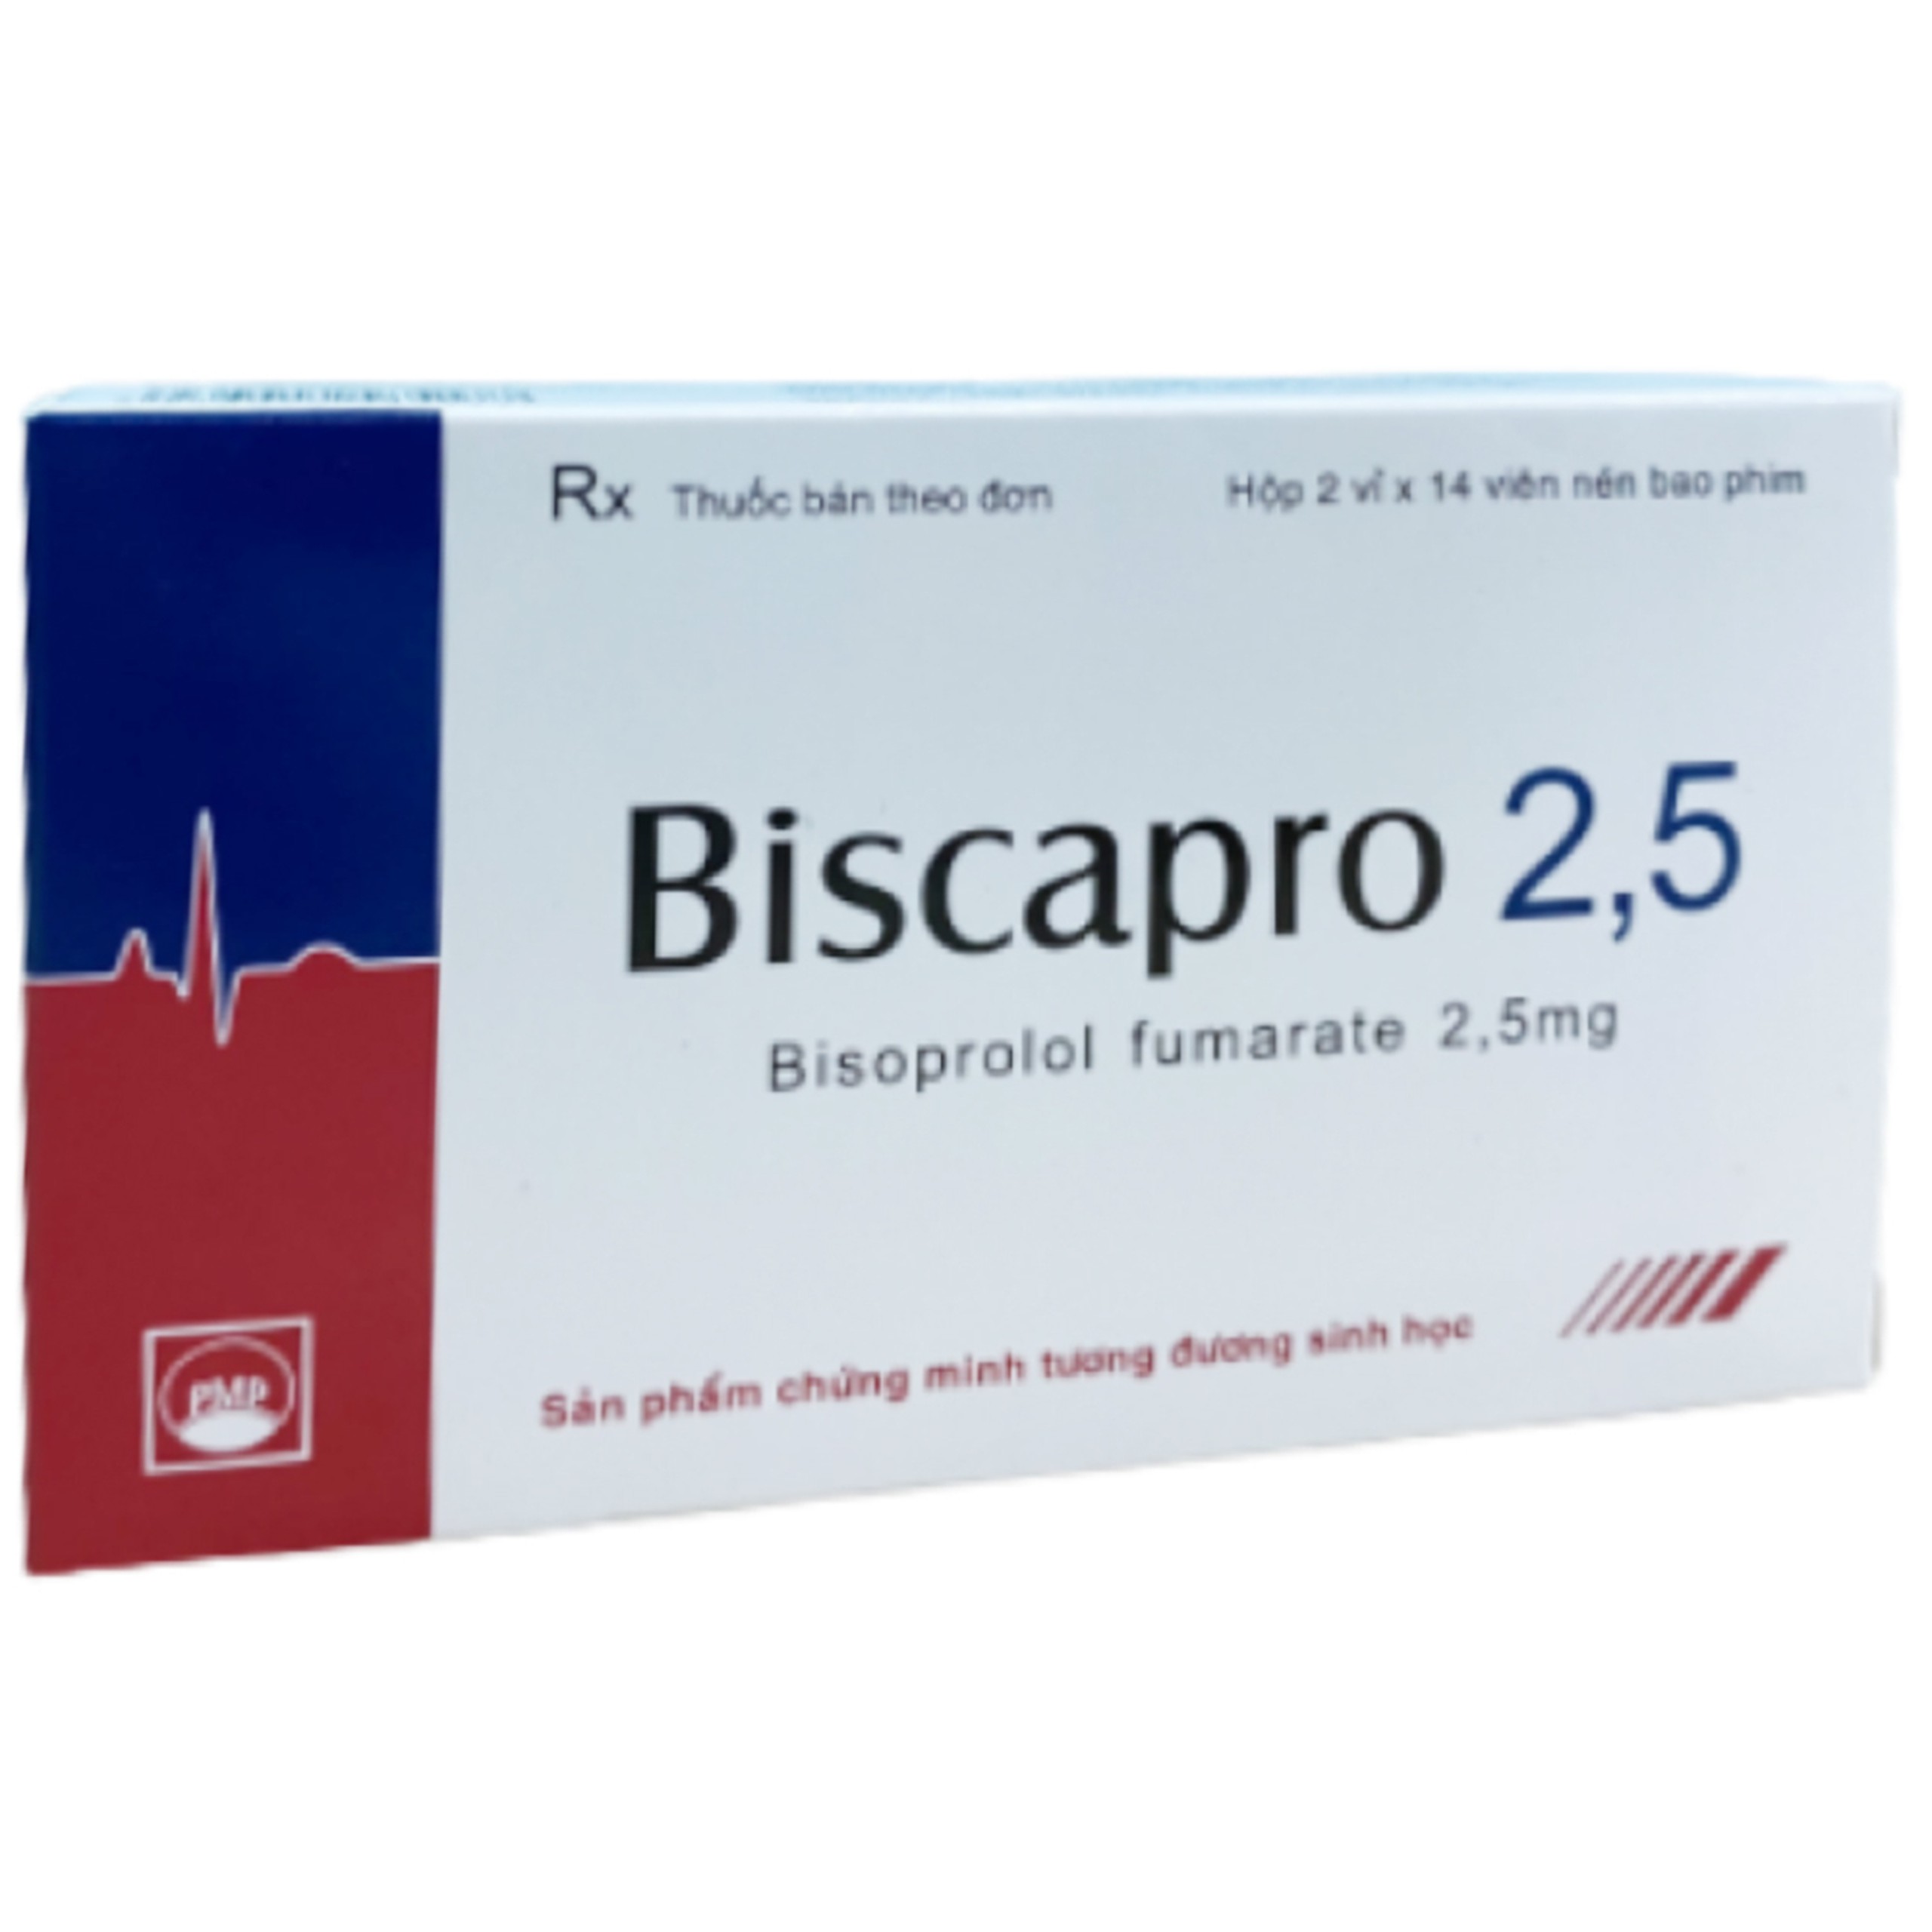 Thuốc Biscapro 2,5 Pymepharco điều trị tăng huyết áp, đau thắt ngực (2 vỉ x 14 viên)